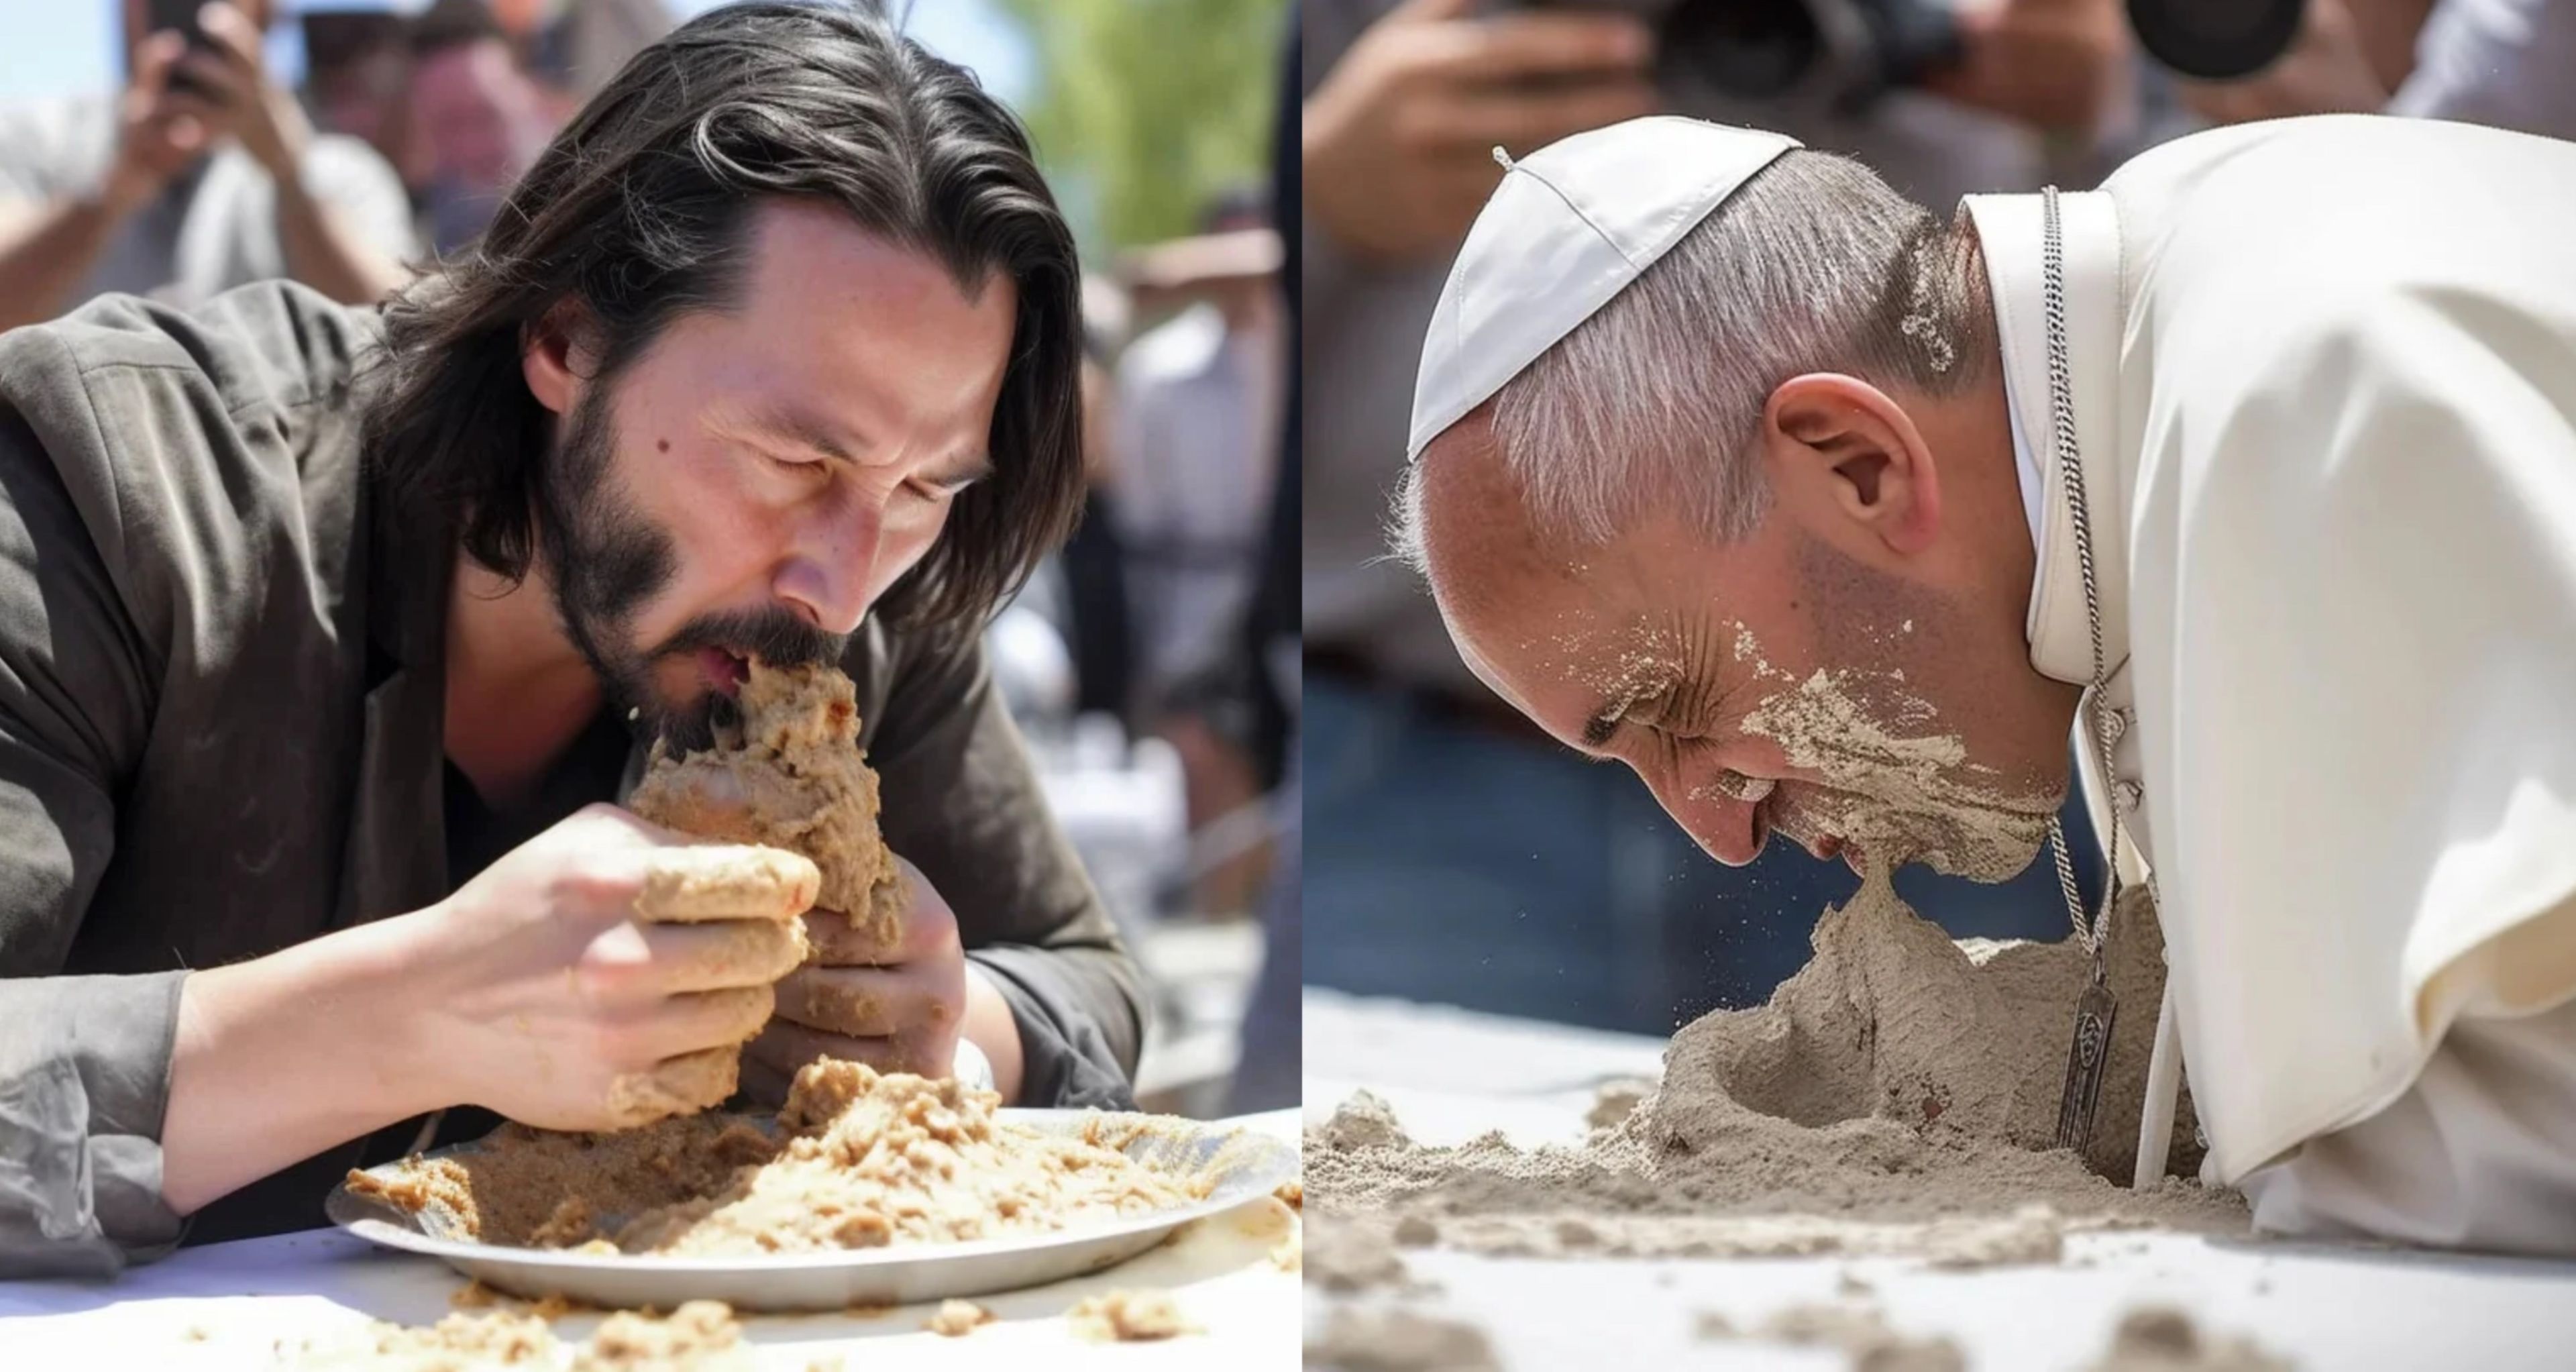 Concurso de comer cemento con famosos